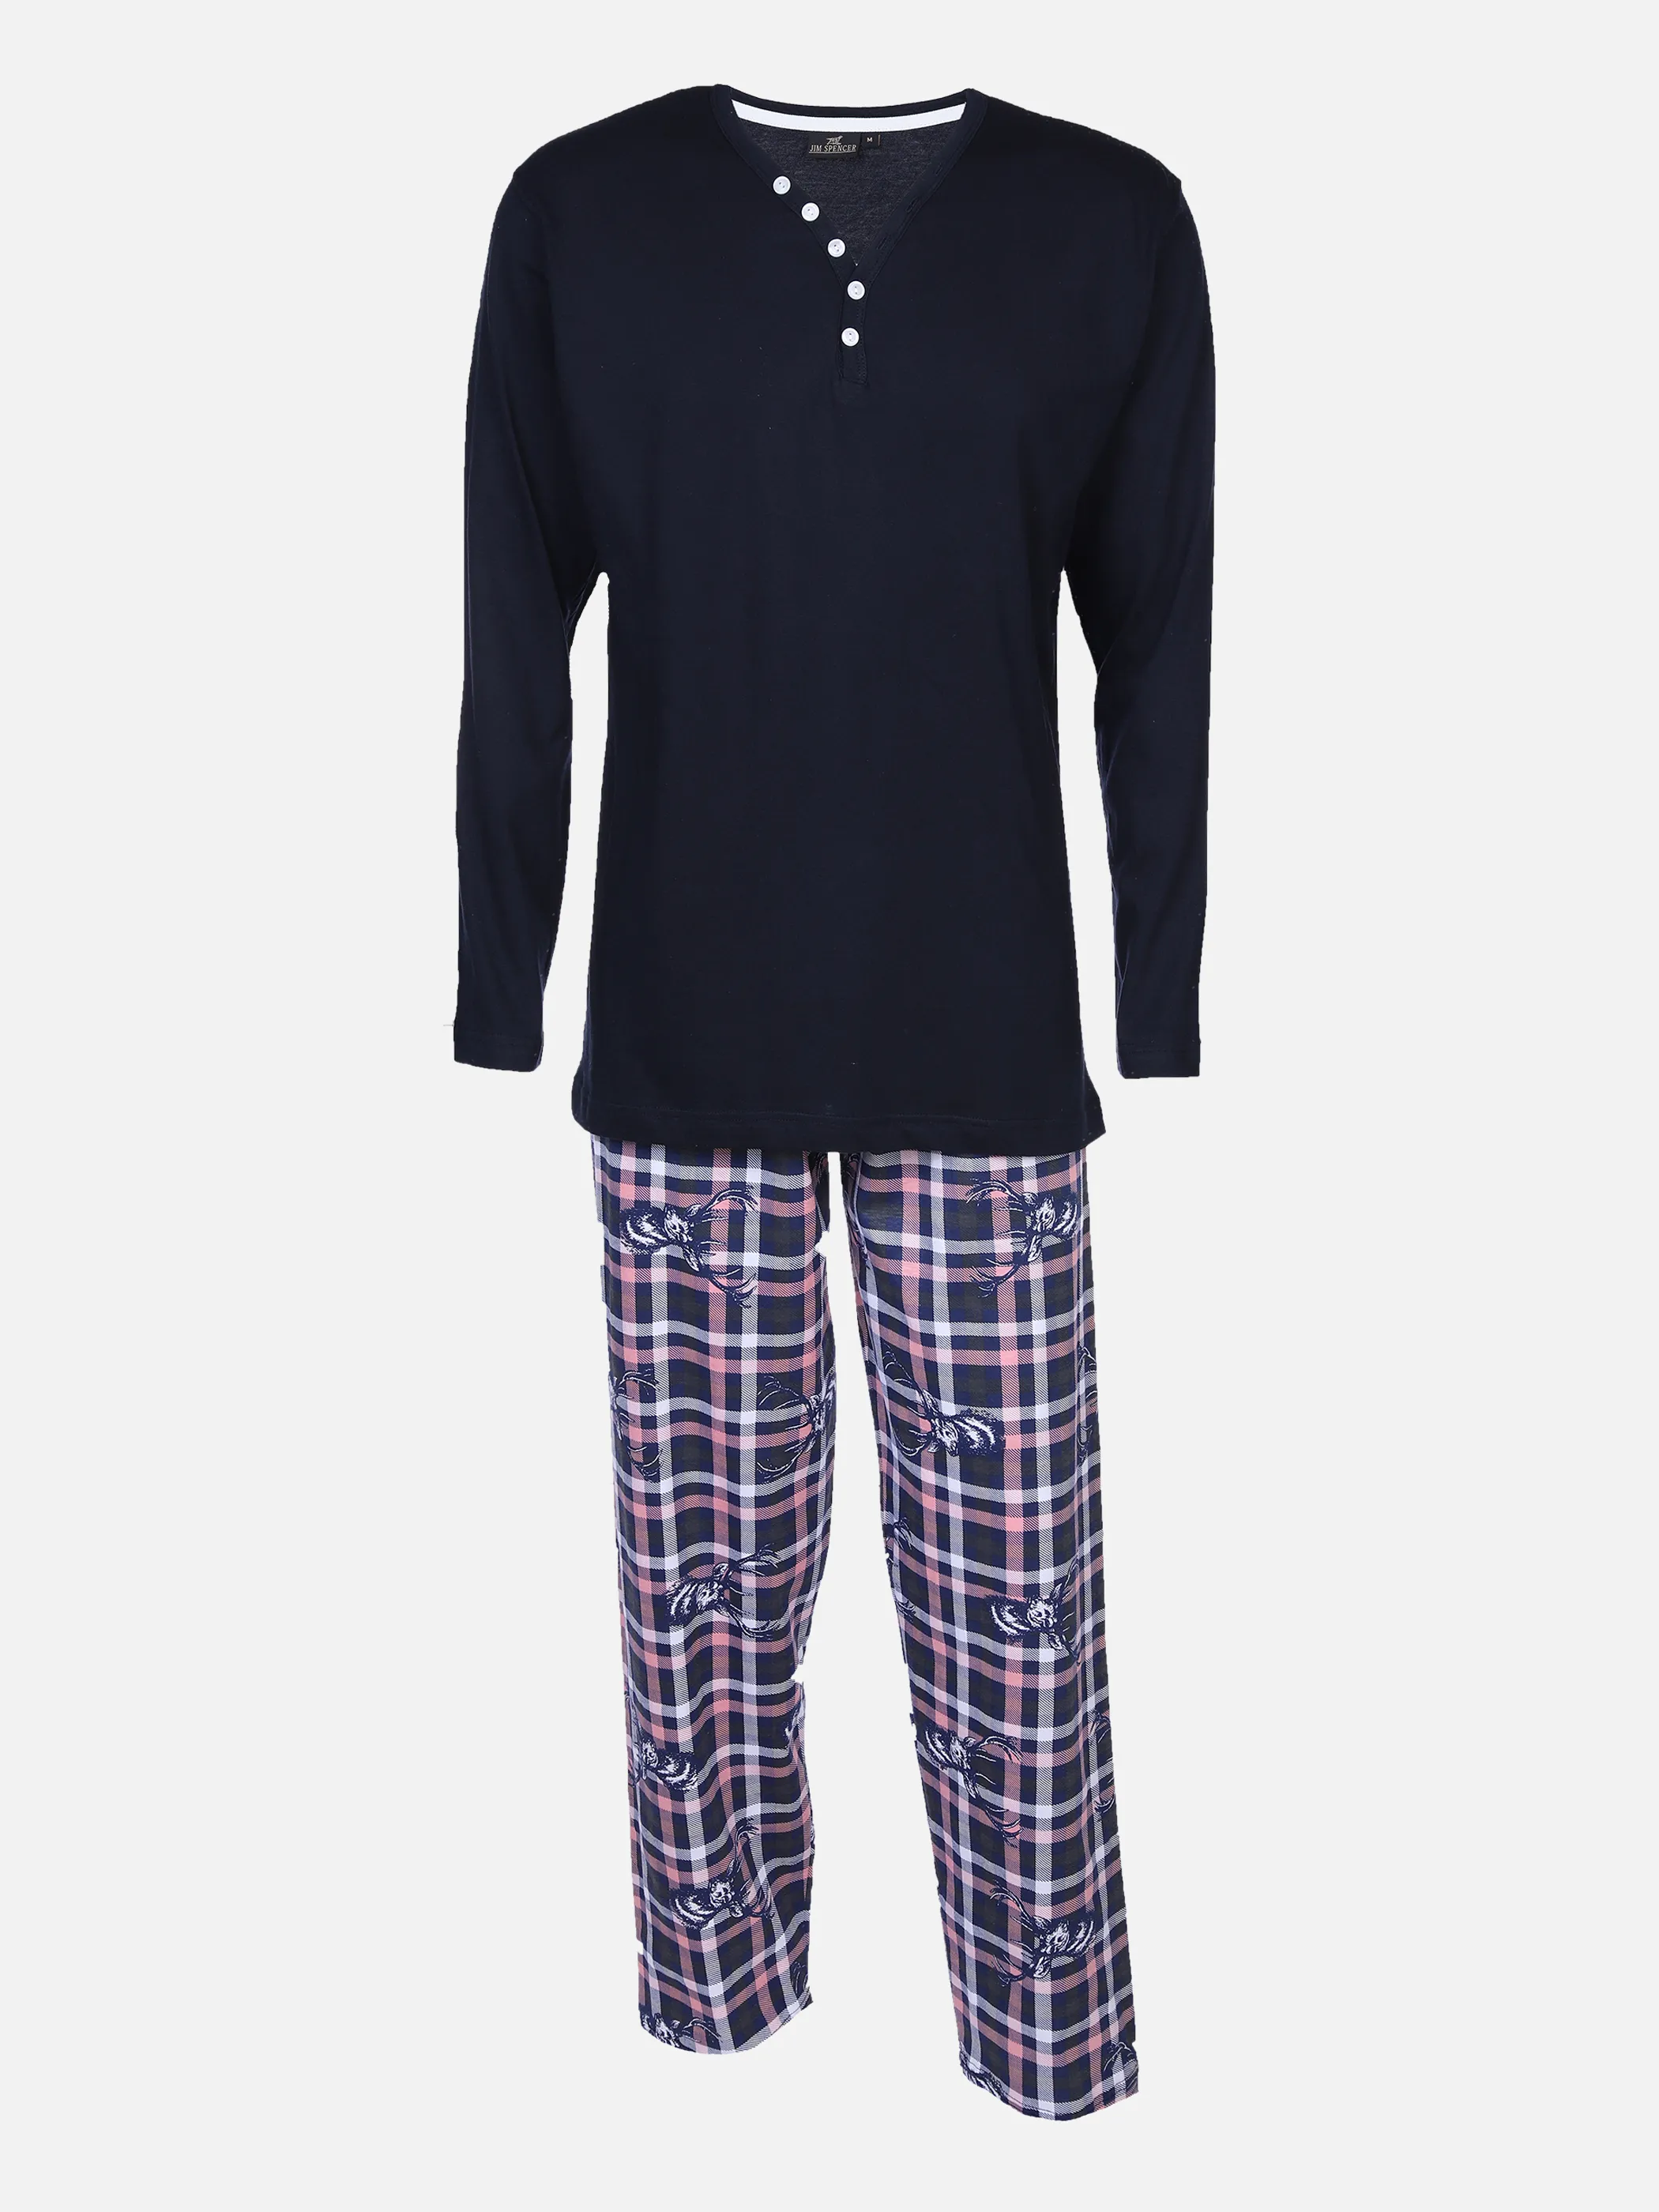 Jim Spencer He Pyjama Serafinoshirt + Hose Blau 870323 BLUE CHECK 1